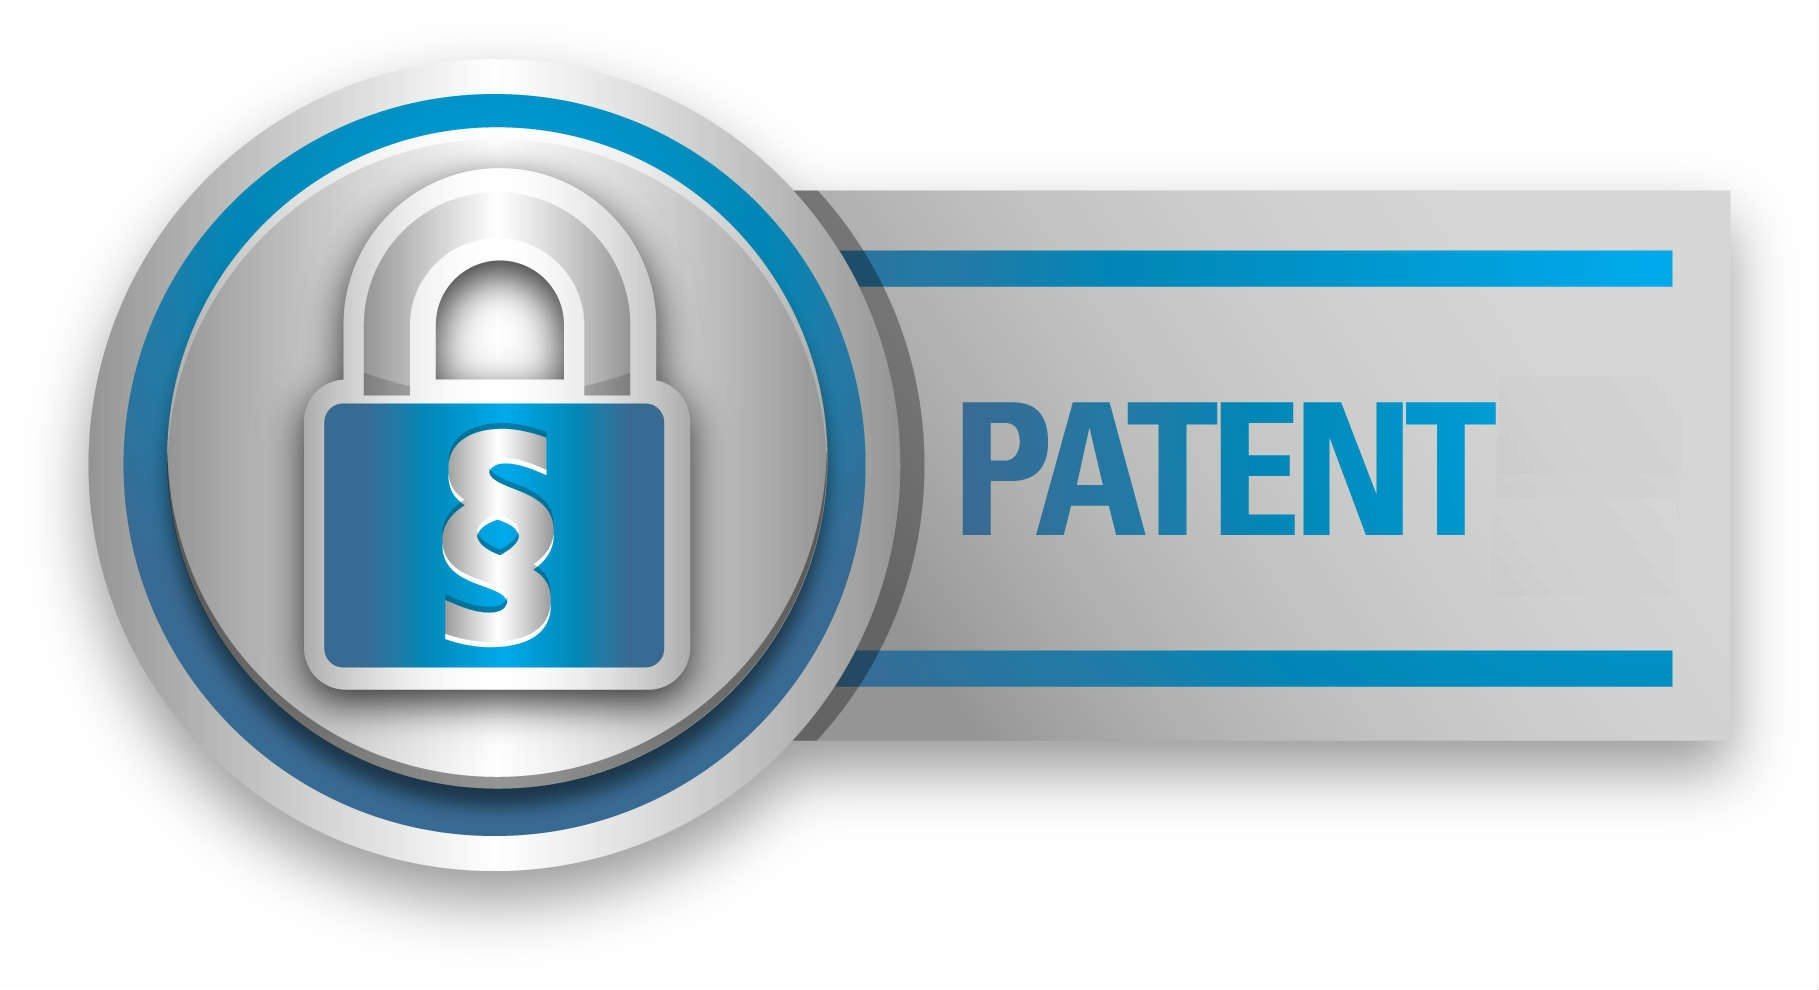 Ставка Патент (Patent): что это такое и как выиграть?